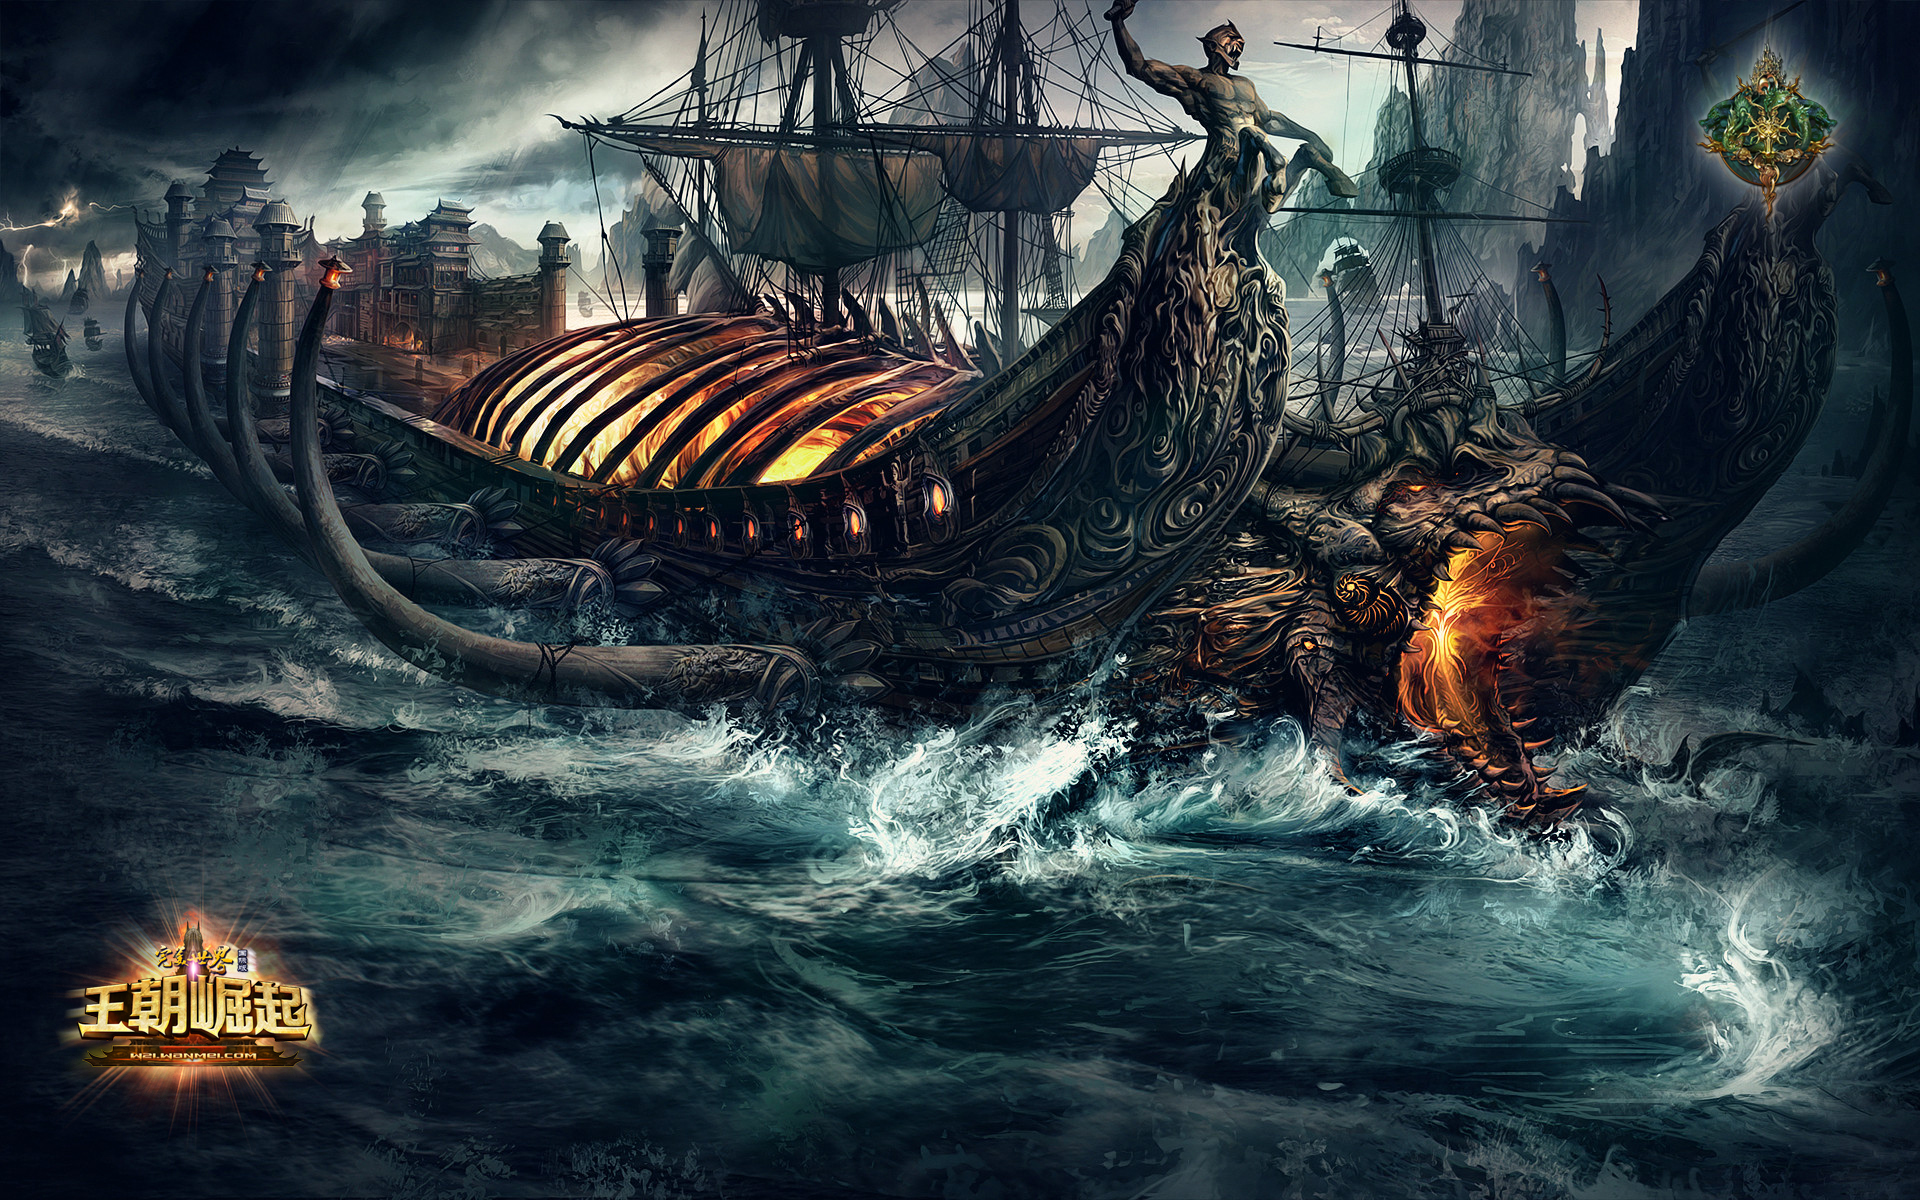 fondo de pantalla perfecto,juego de acción y aventura,cg artwork,barcos vikingos,embarcacion,juego de pc